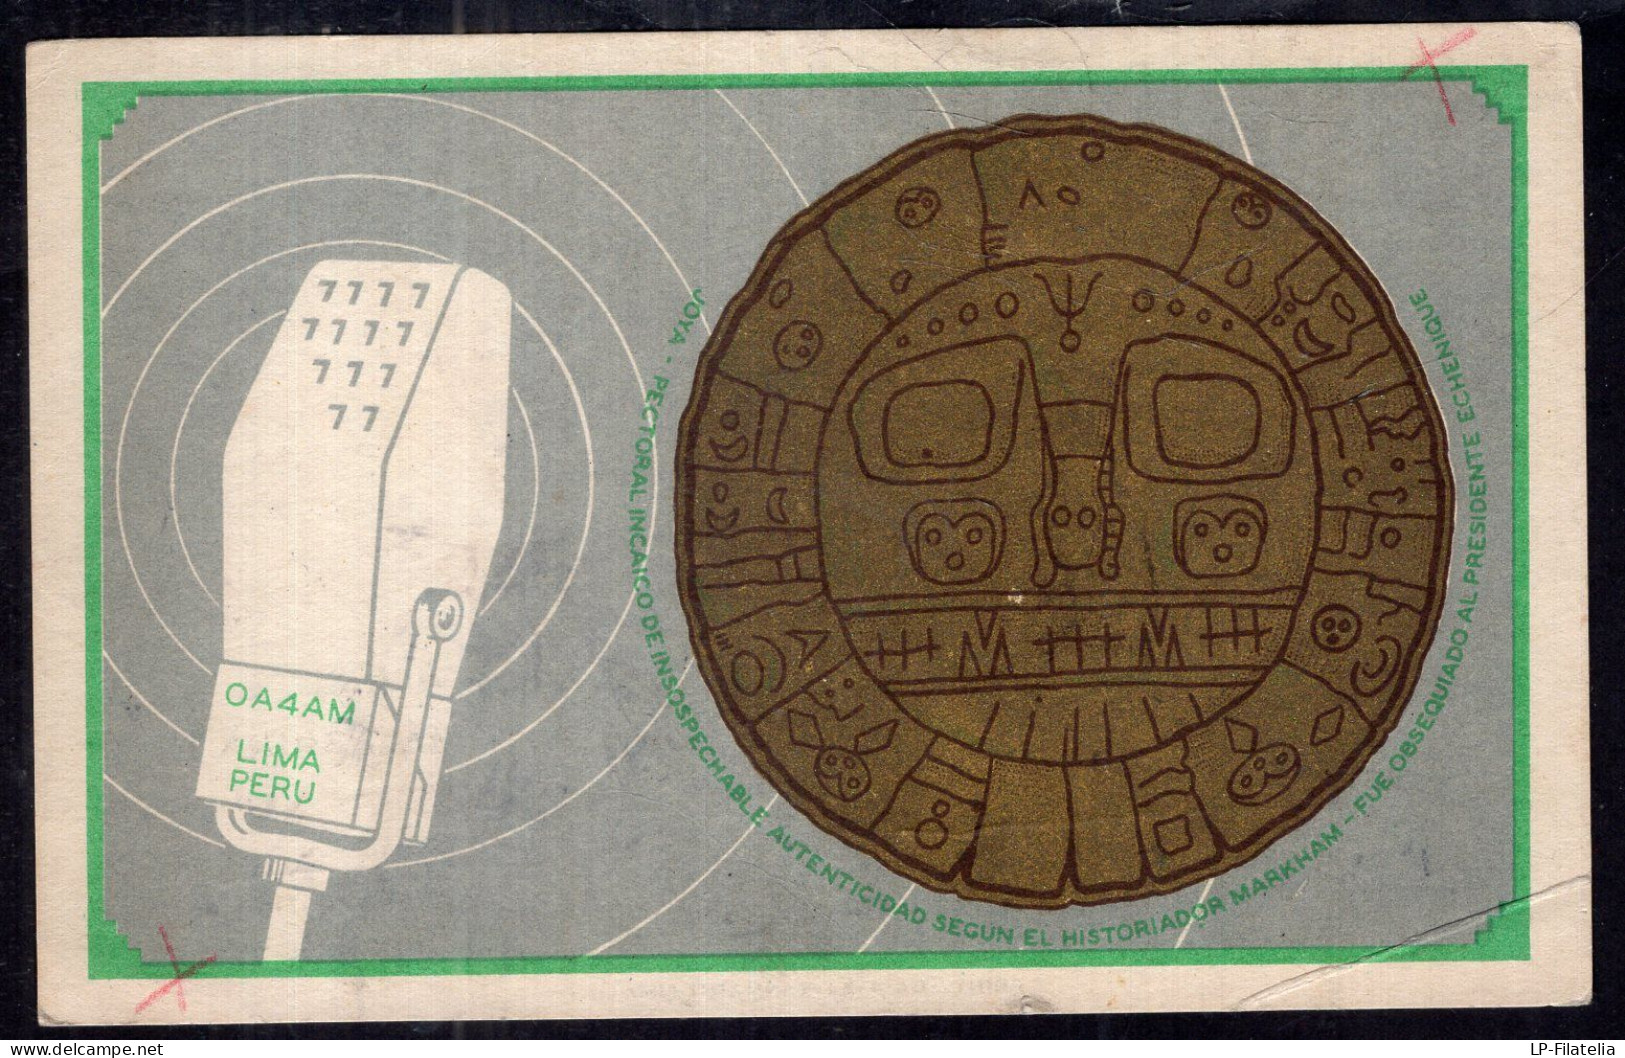 Peru - 1949 - OA4AM - Radio-amateur